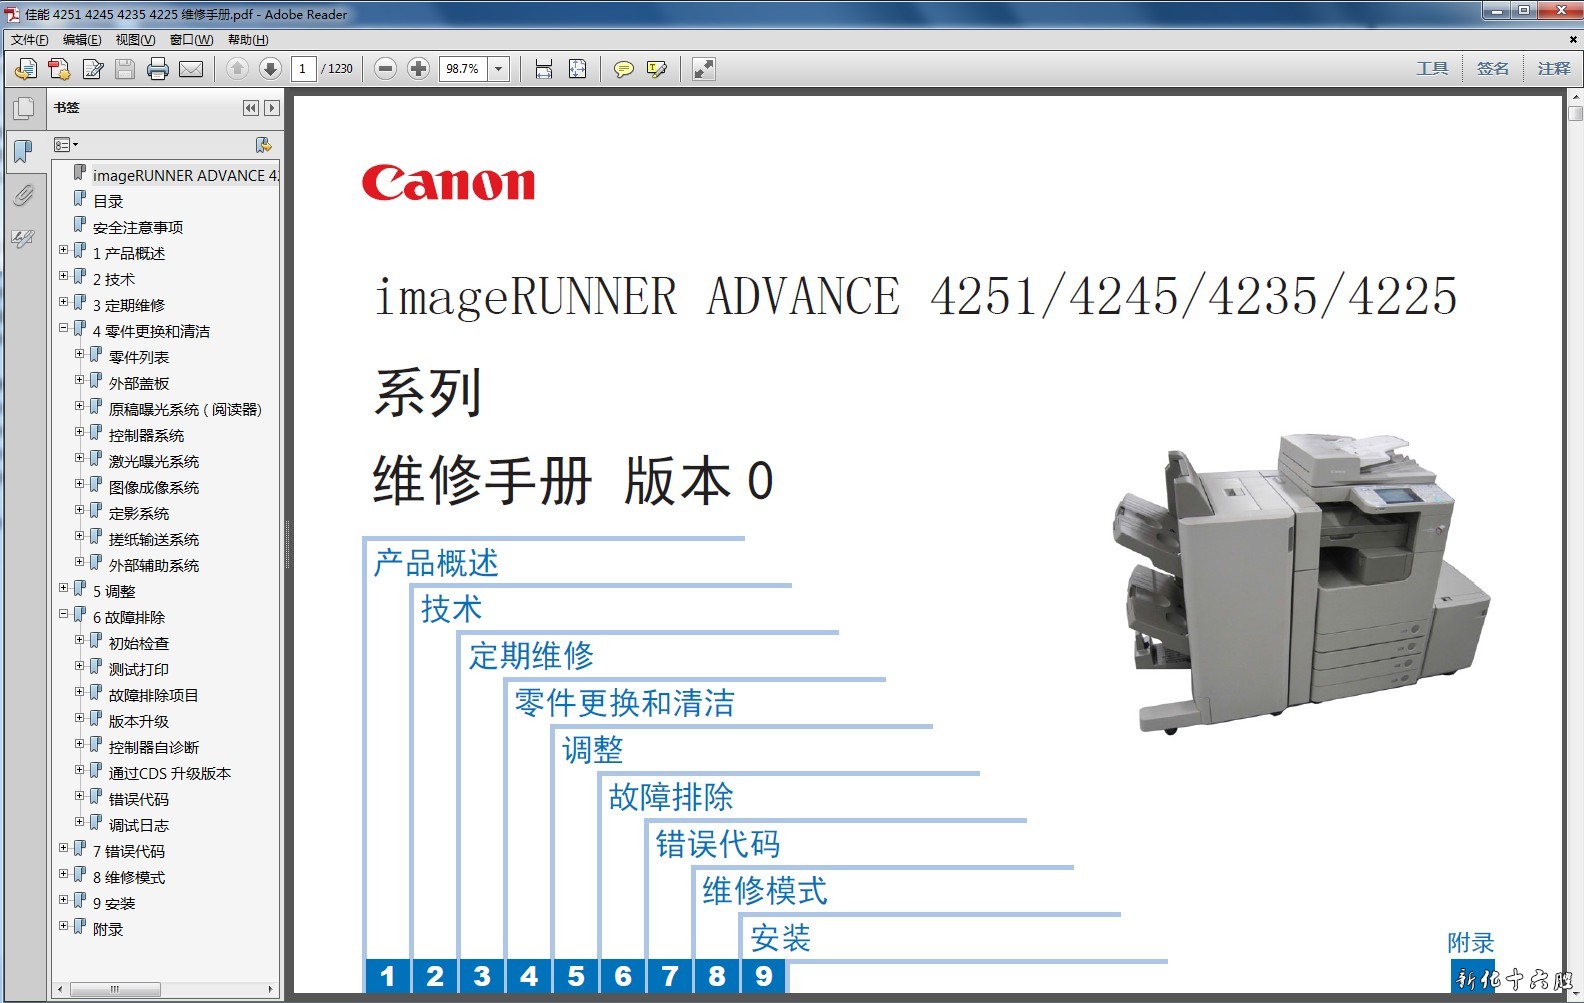 佳能 Canon IR ADV 4251 4245 4235 4225 复印机中文维修手册资料.jpg